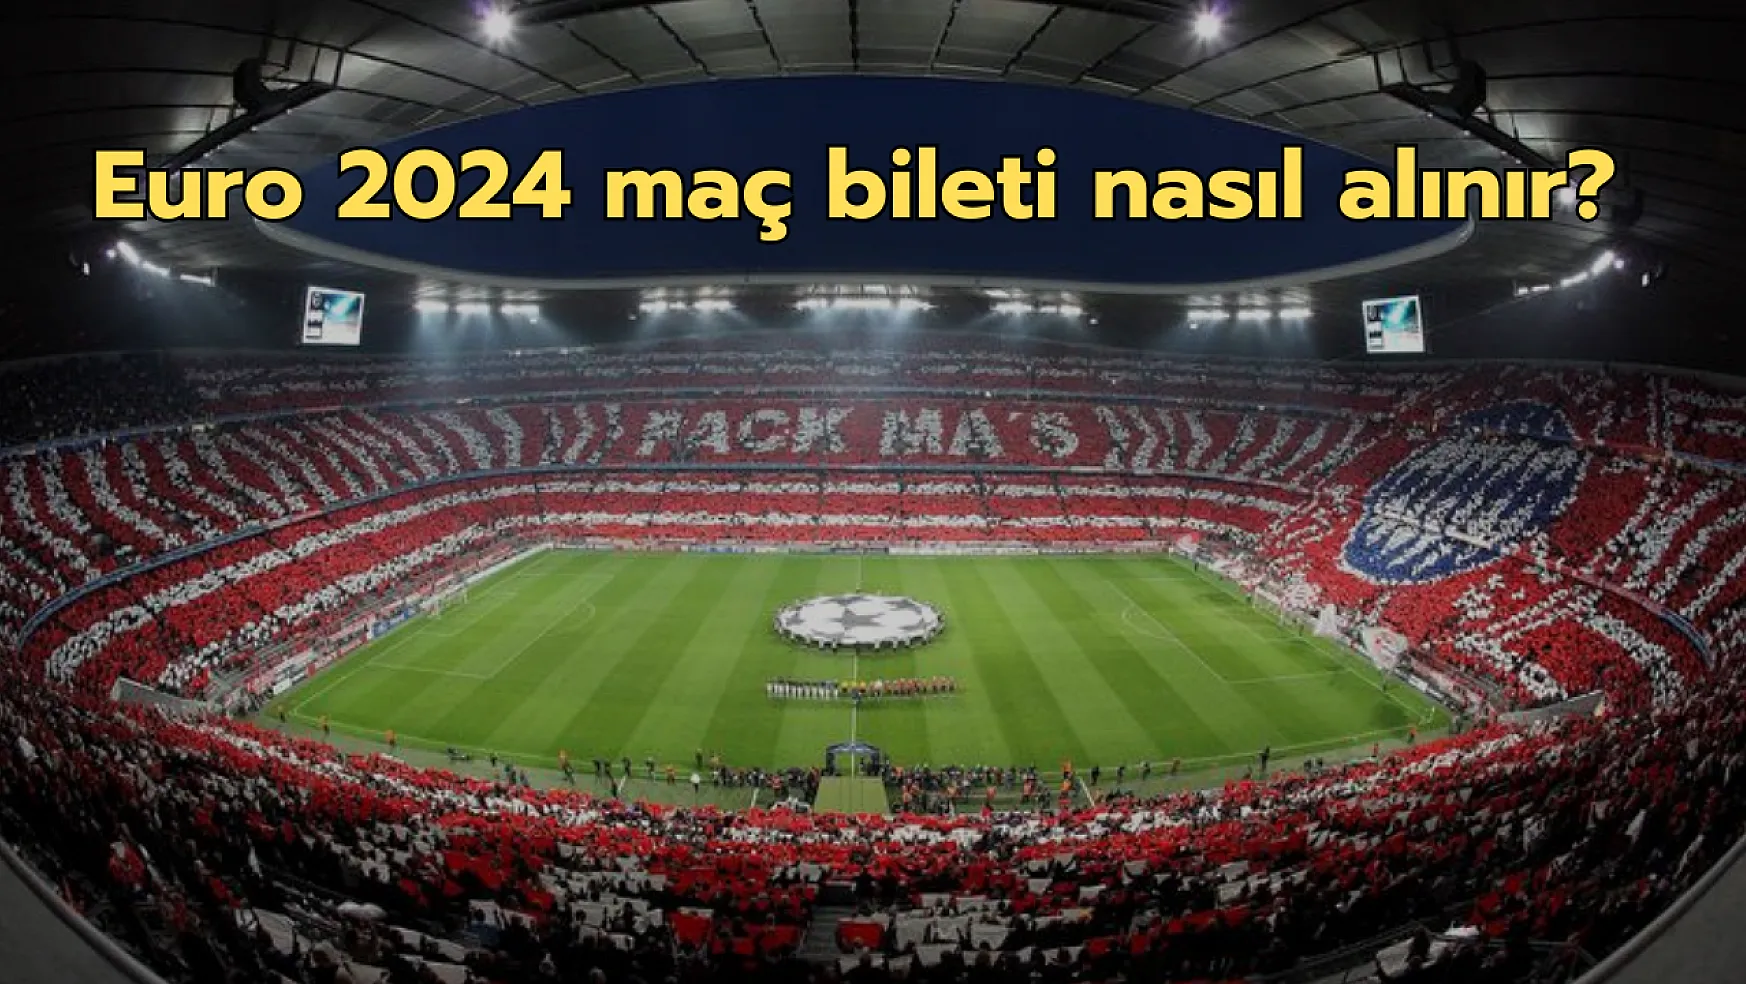 Euro 2024 maç bileti nasıl alınır? Türkiye'nin Euro 2024 maç bileti fiyatları